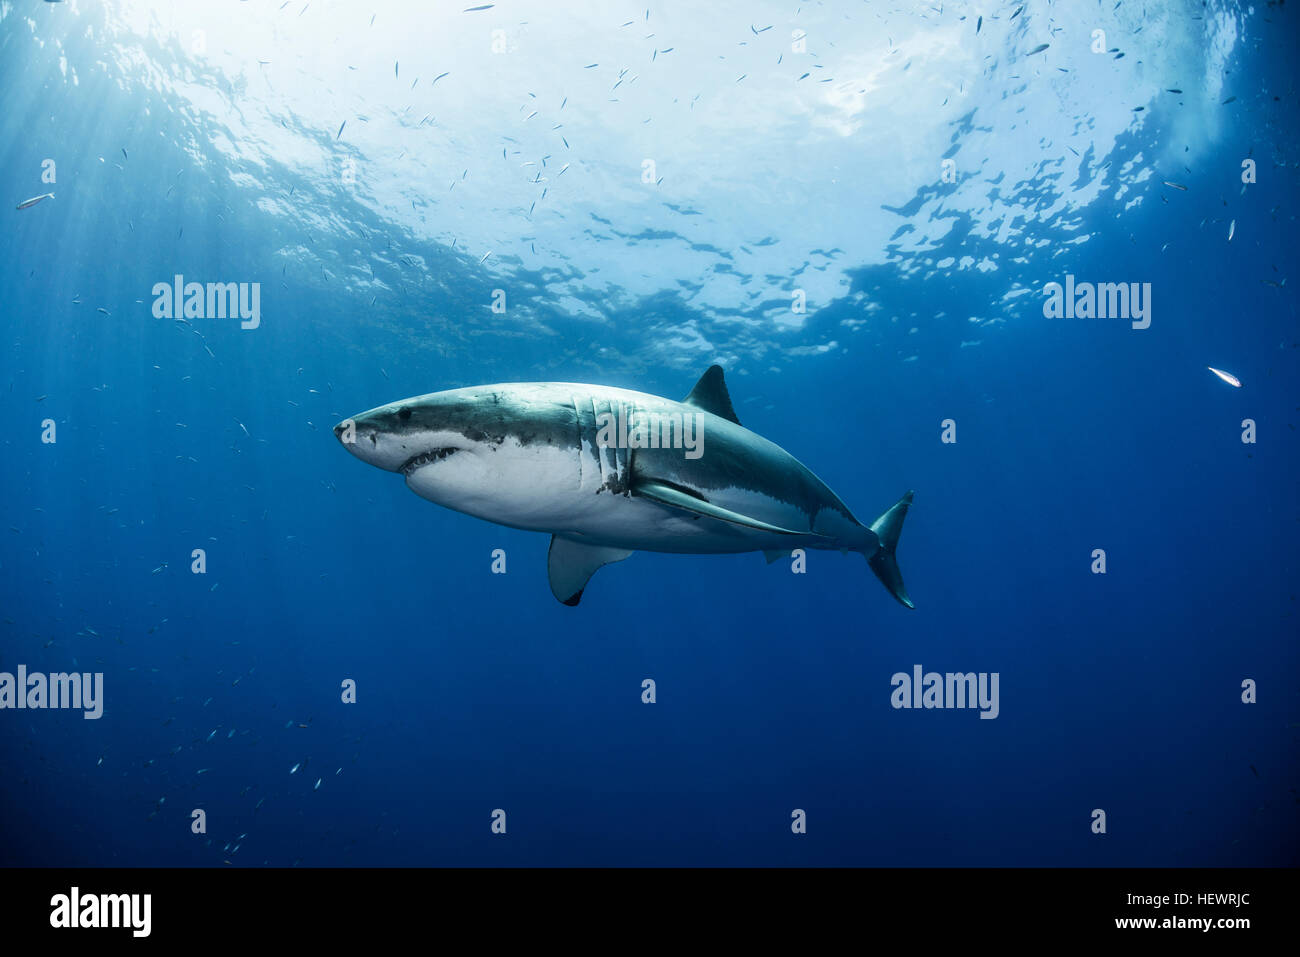 Basso angolo vista del grande squalo bianco, a Guadalupe, in Messico Foto Stock